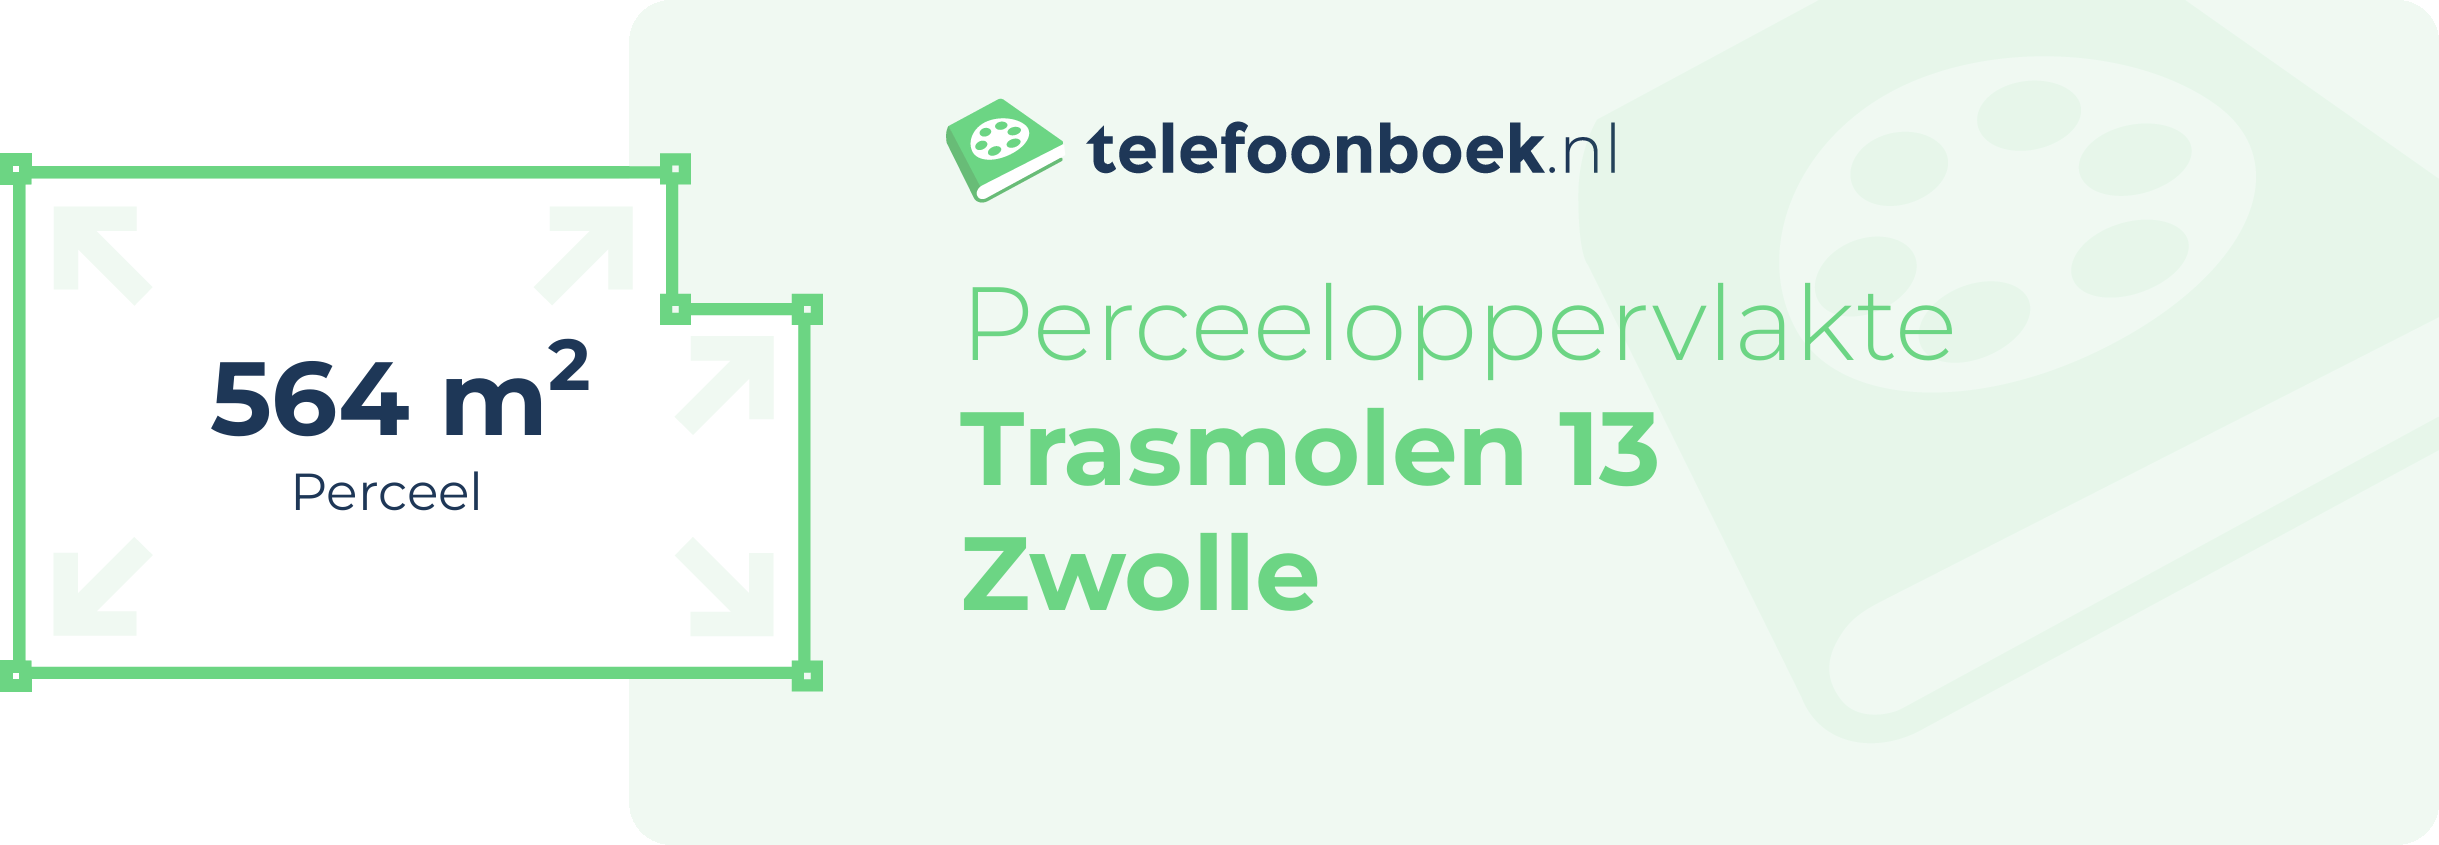 Perceeloppervlakte Trasmolen 13 Zwolle